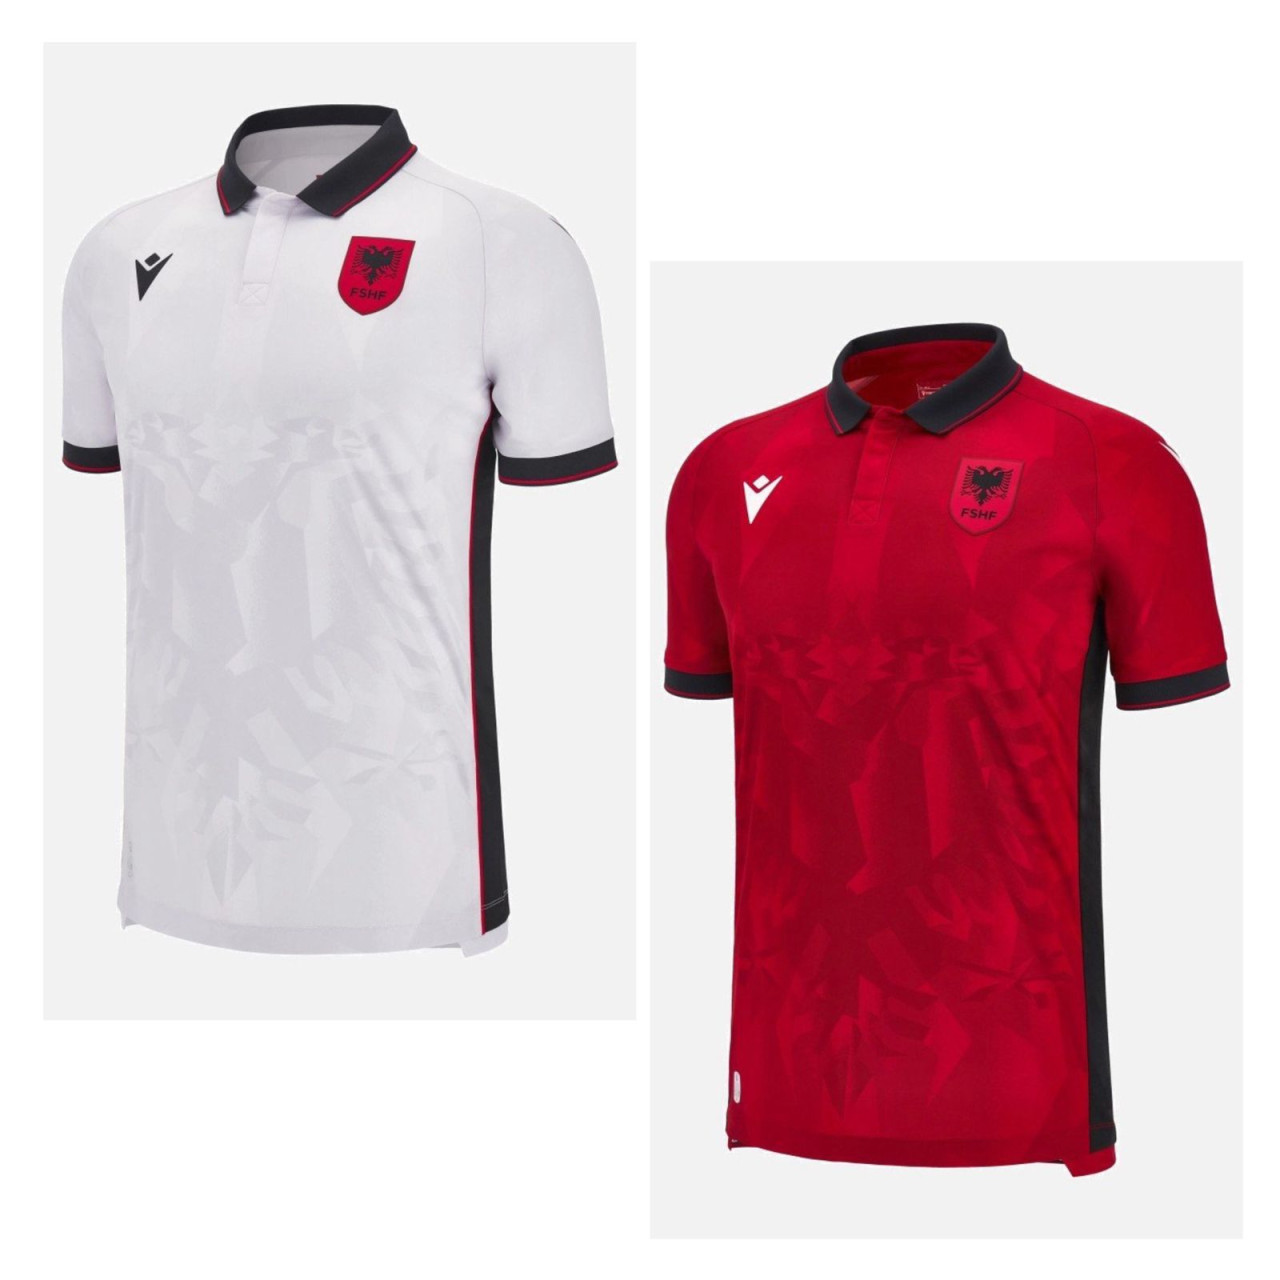 Camiseta titular y suplente de Albania.